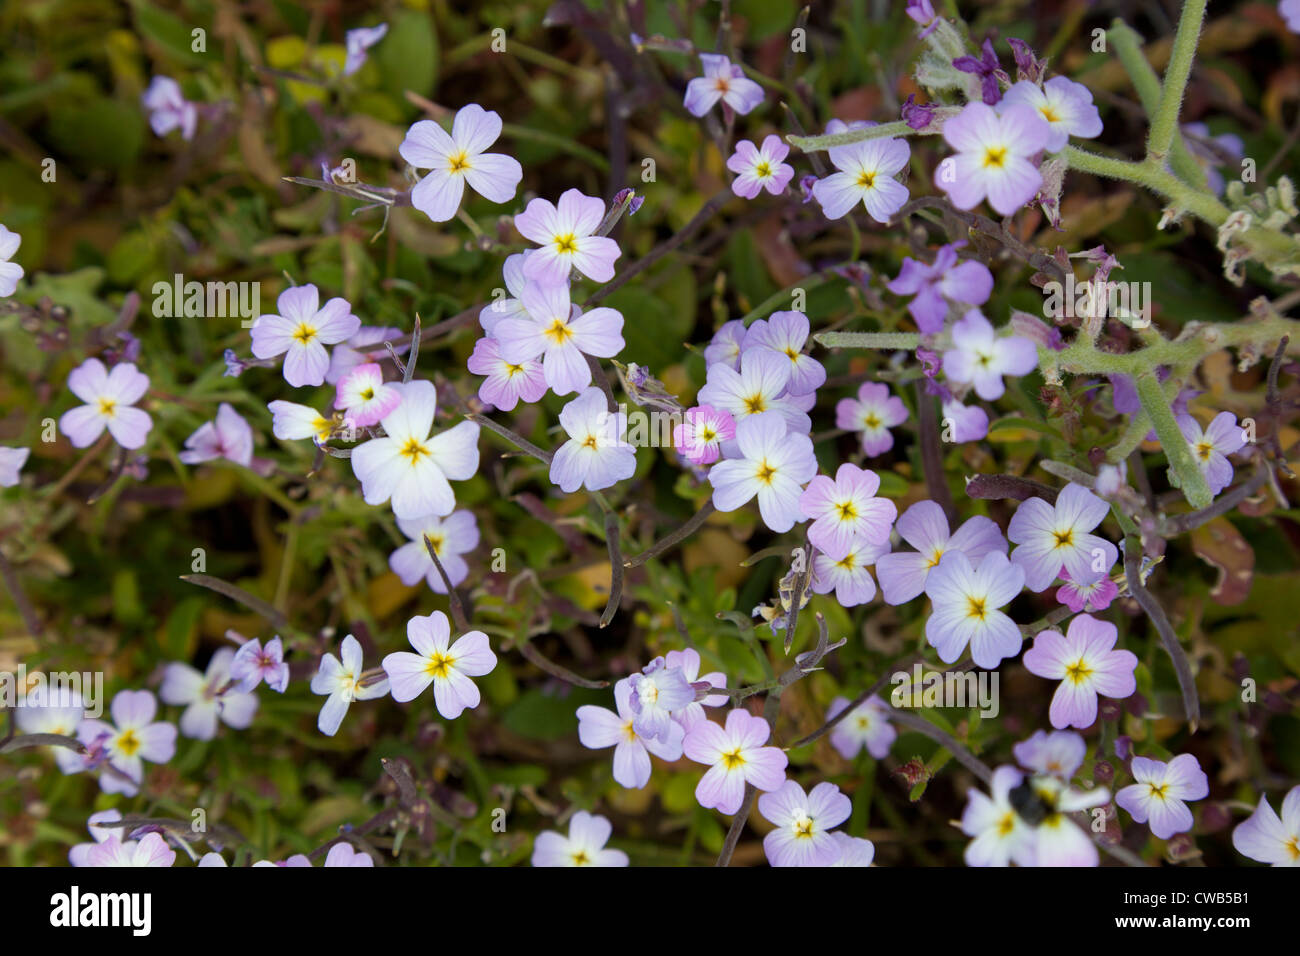 Wilde Küsten Blumen, Kreta Griechenland Stockfoto